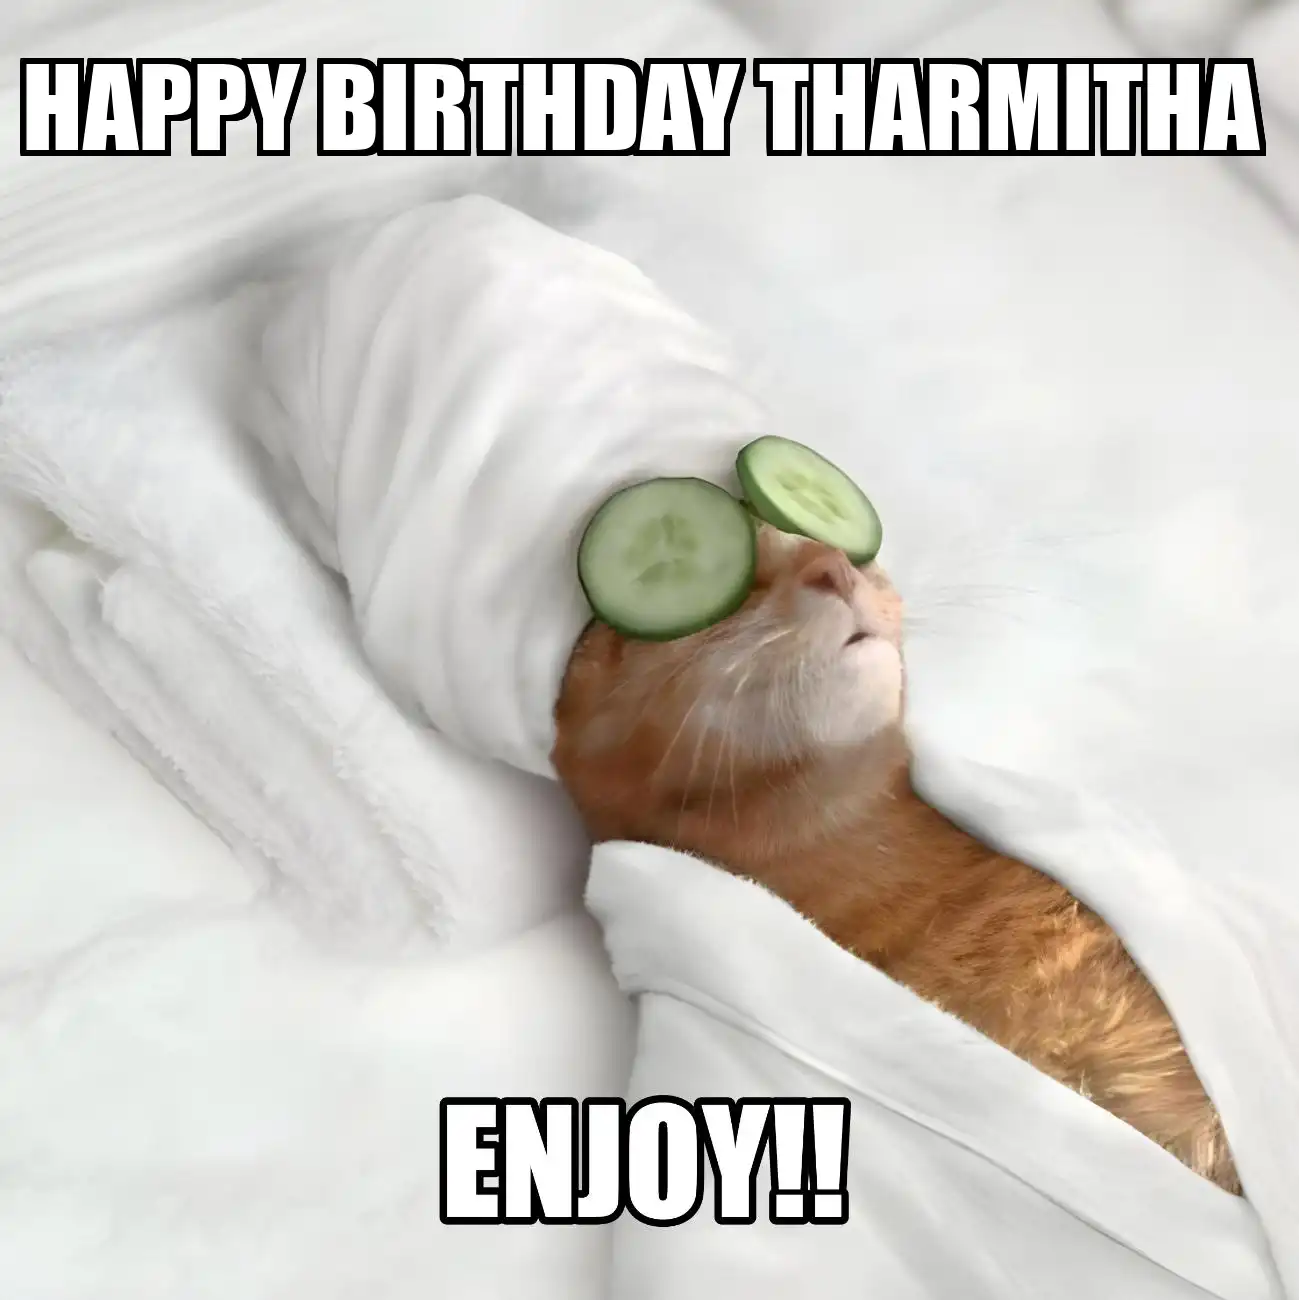 Happy Birthday Tharmitha Enjoy Cat Meme